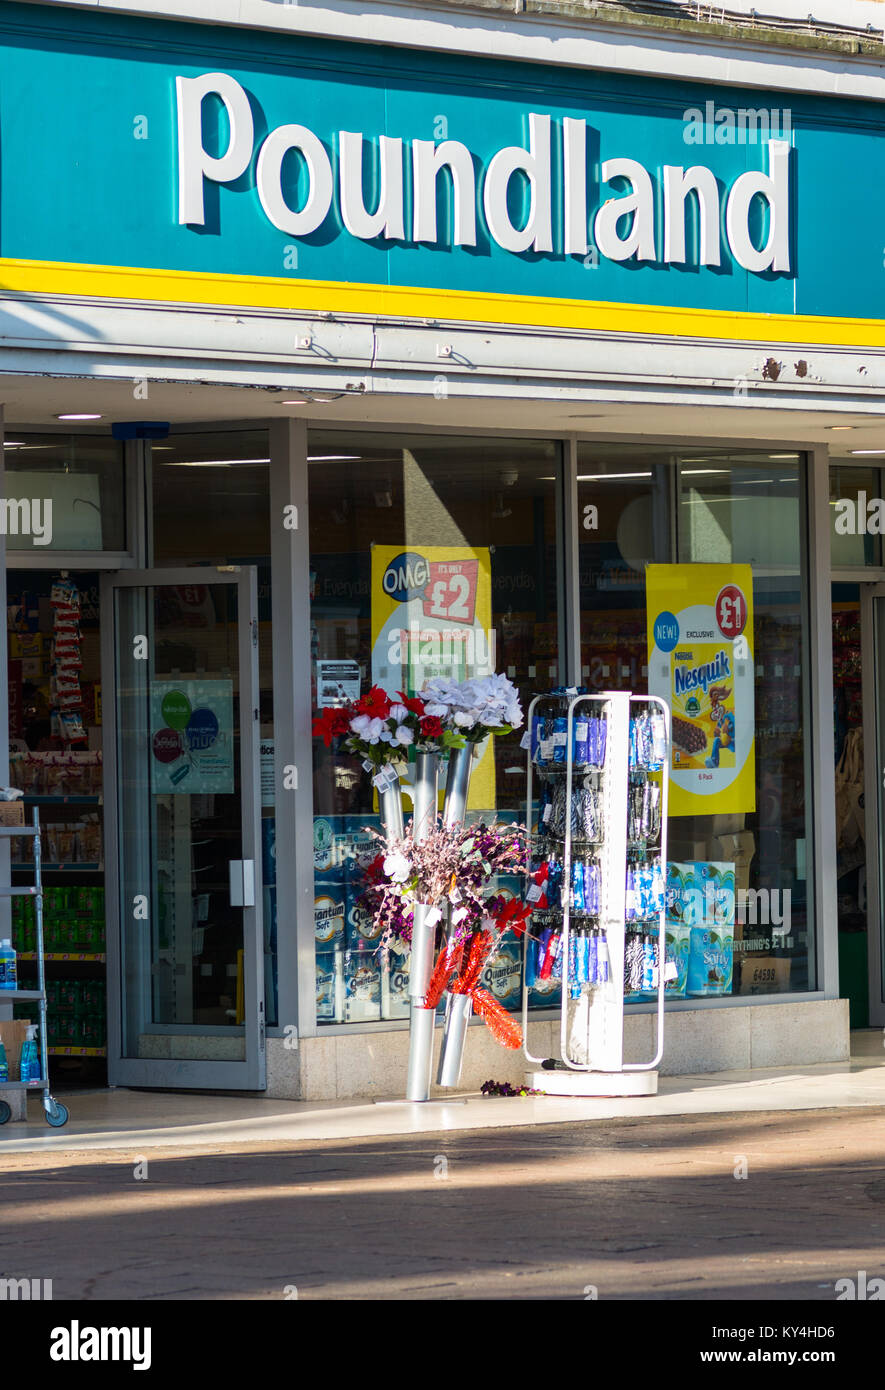 Poundland storefront in Bury St Edmunds, Suffolk, England, UK. Stock Photo